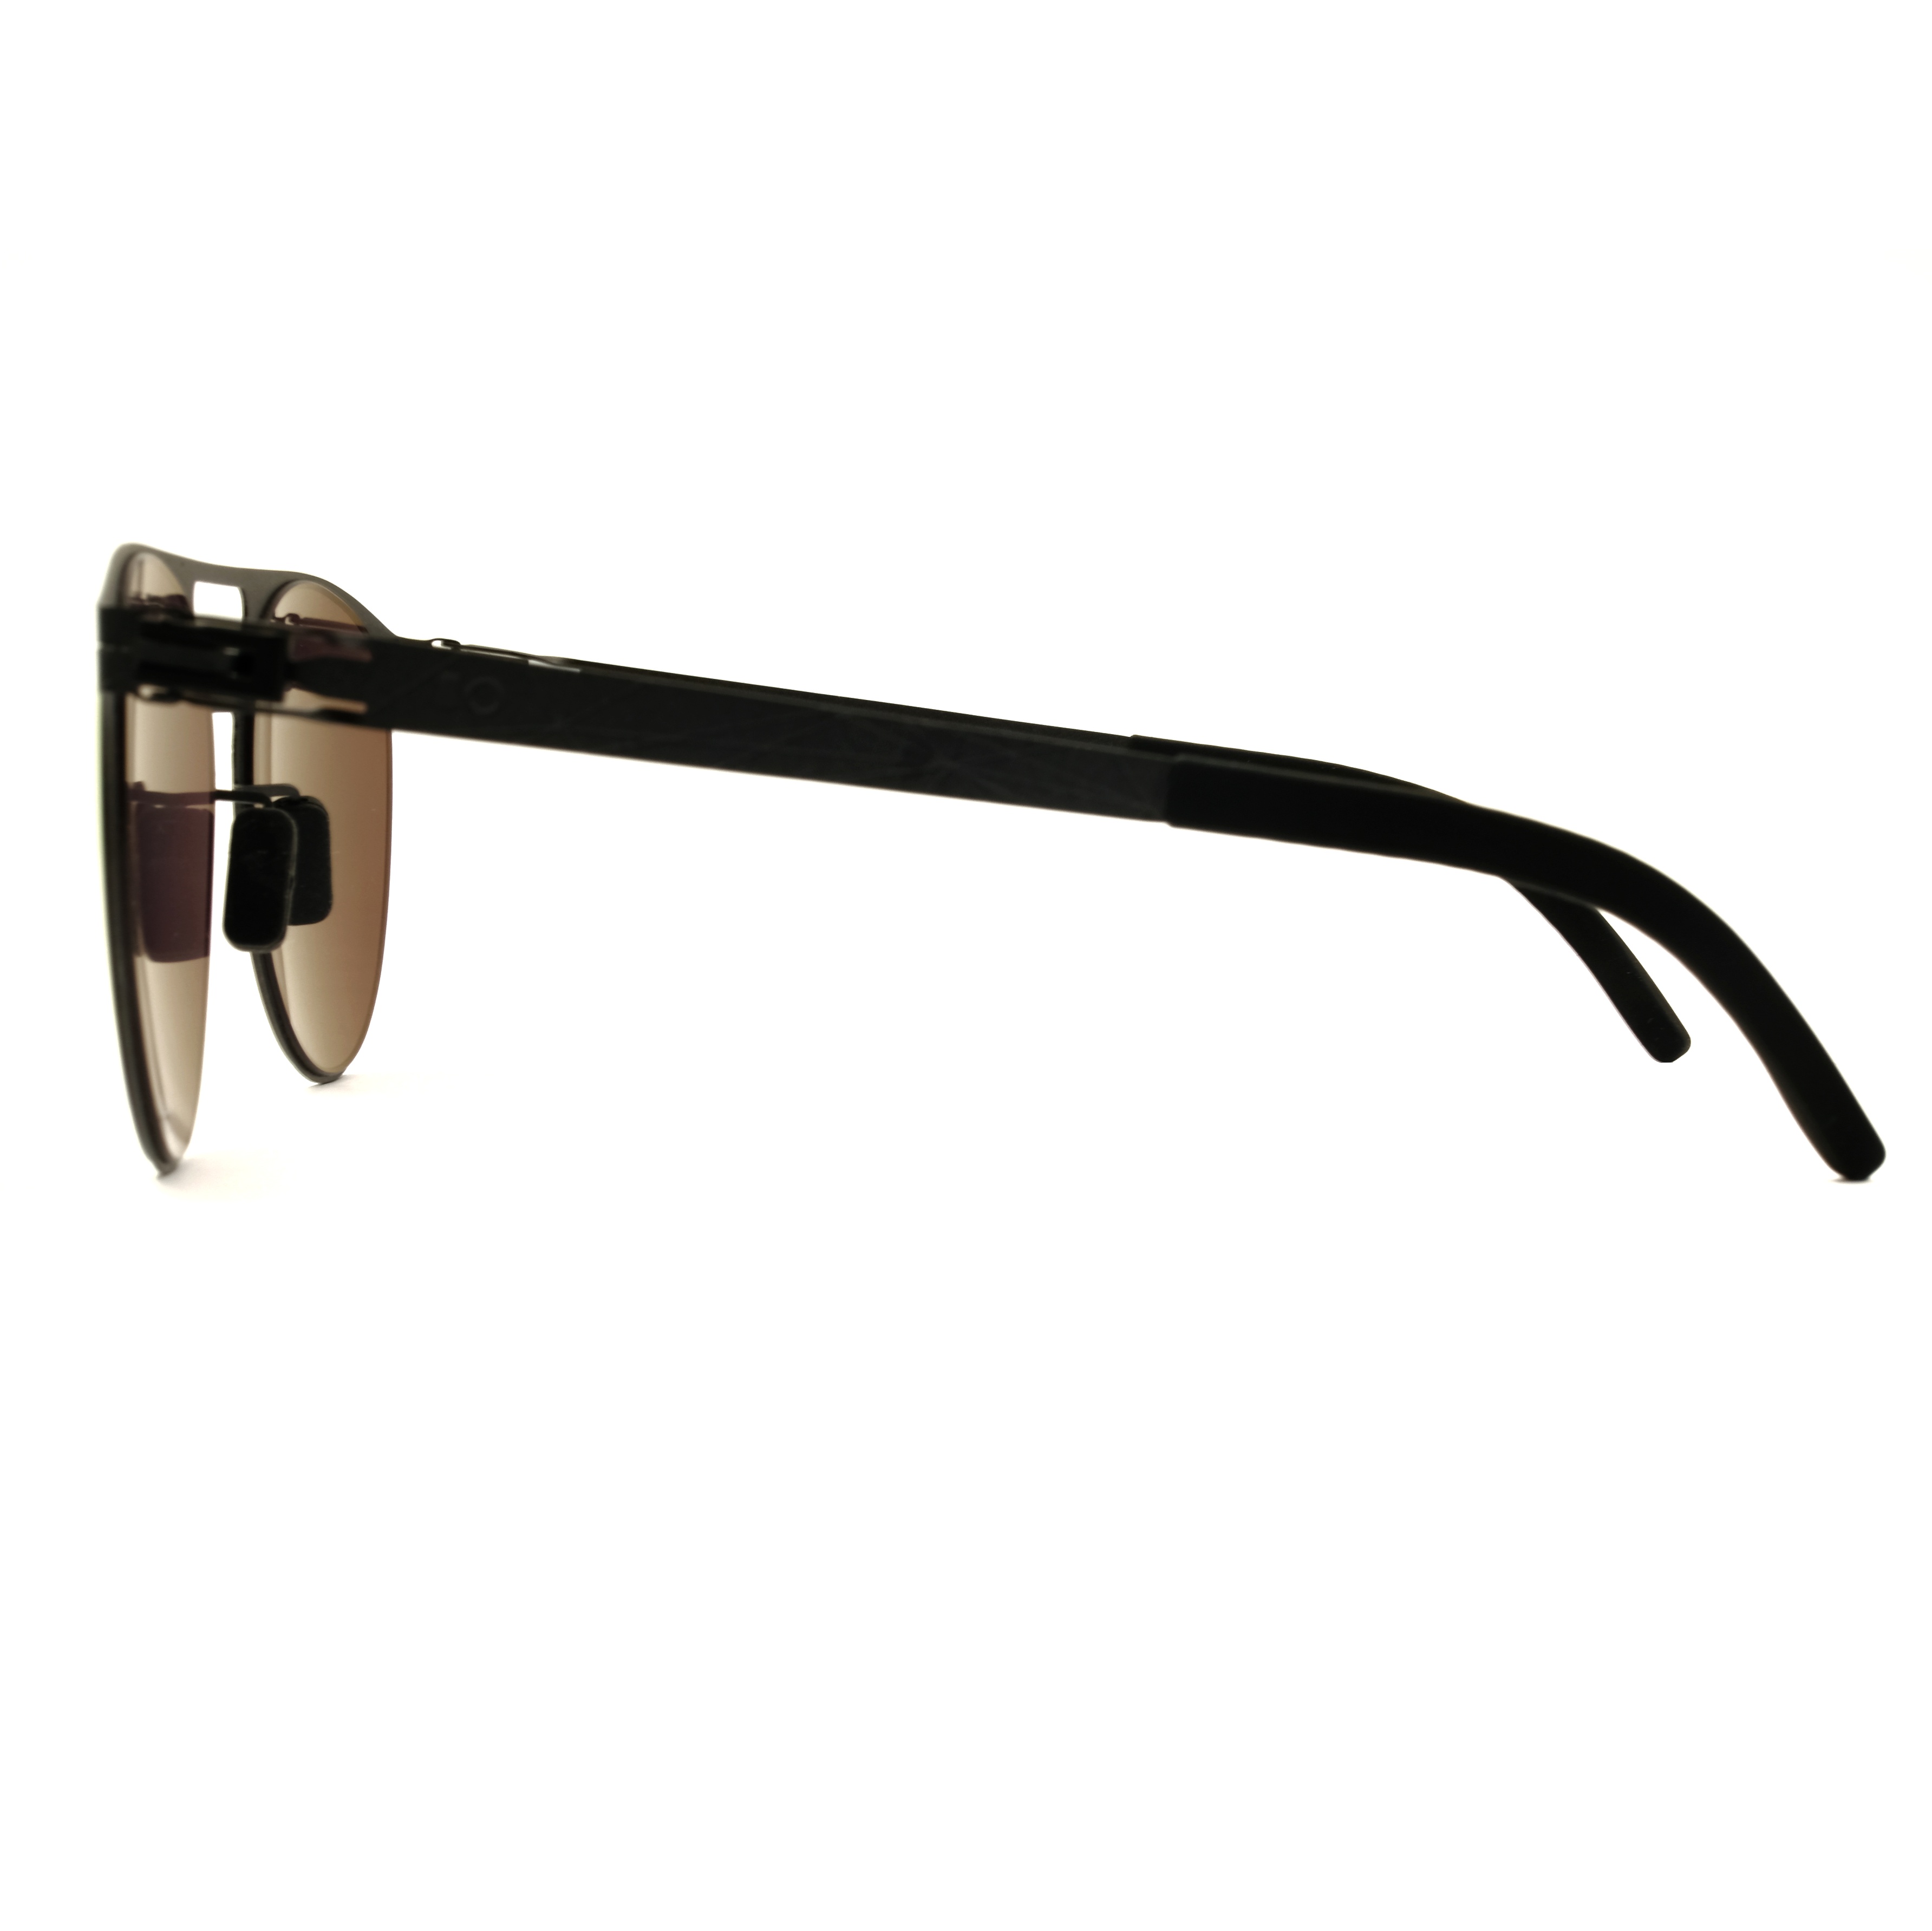 Gafas de sol RTS para hombre, gafas de sol de río, gafas de sol de río 2021, tendencia de moda, hombres, mujeres, viajes, deportes, fiestas, negocios